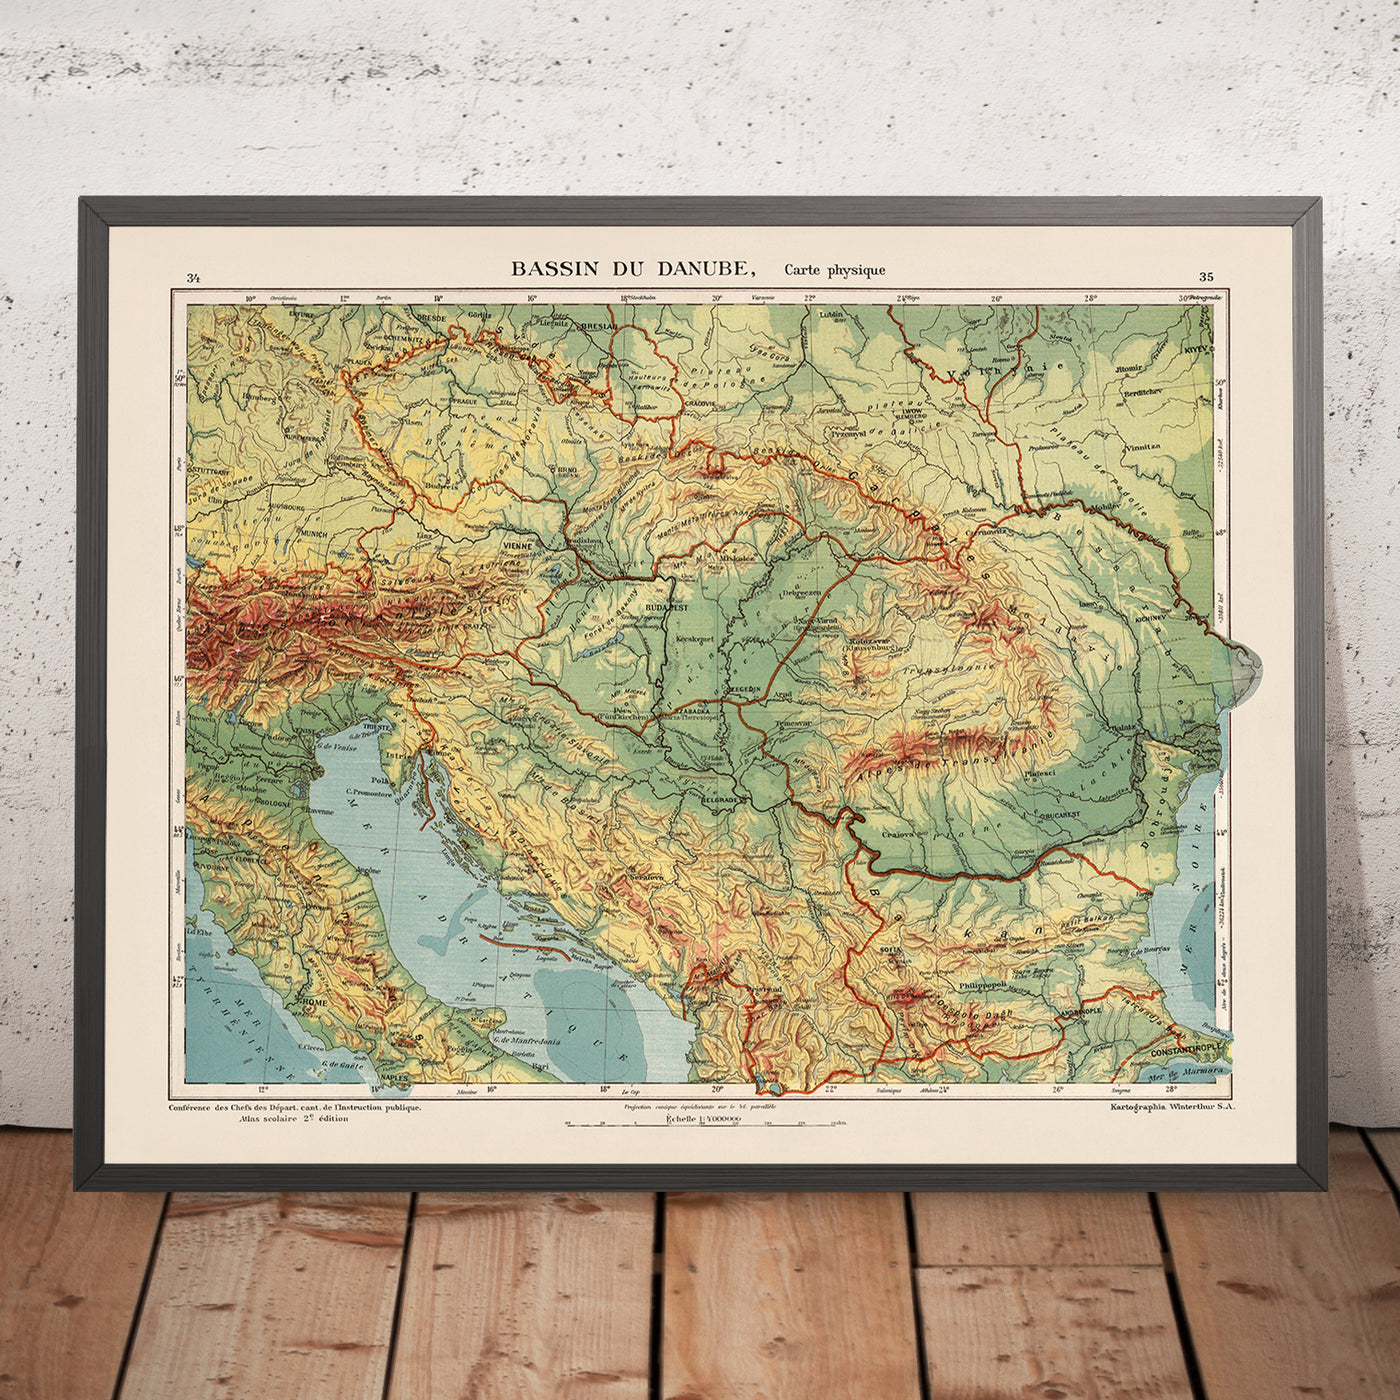 Mapa antiguo de Europa central y oriental de Kartographia Winterthur, 1921: río Danubio, Munich, Viena, Belgrado, Budapest, Bucarest